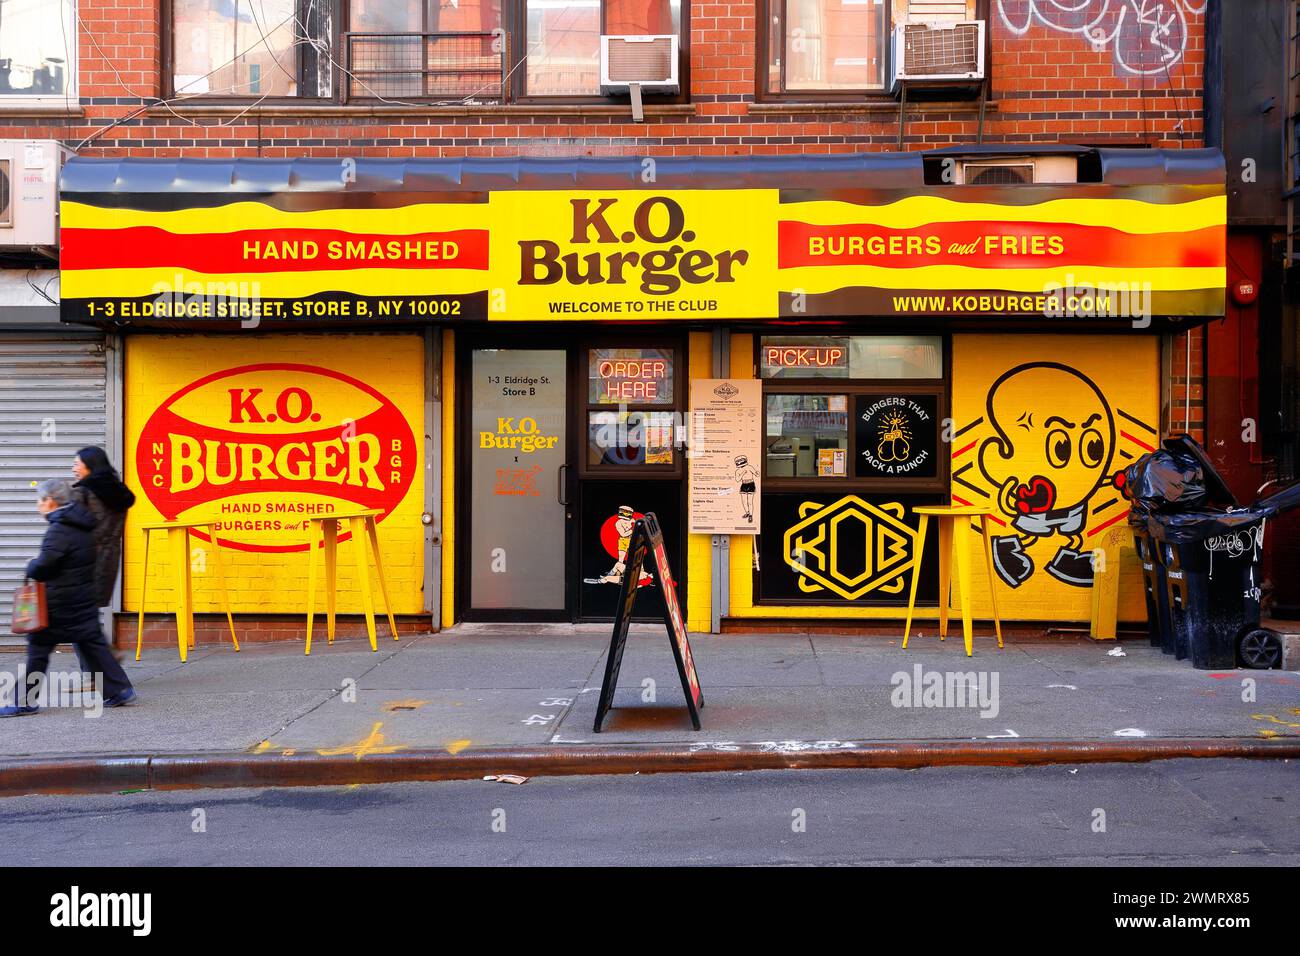 K.O. Burger, 1-3 Eldridge St, New York, NYC, Ladenfront eines Superburgerrestaurants in Manhattans Chinatown/Lower East Side. Stockfoto